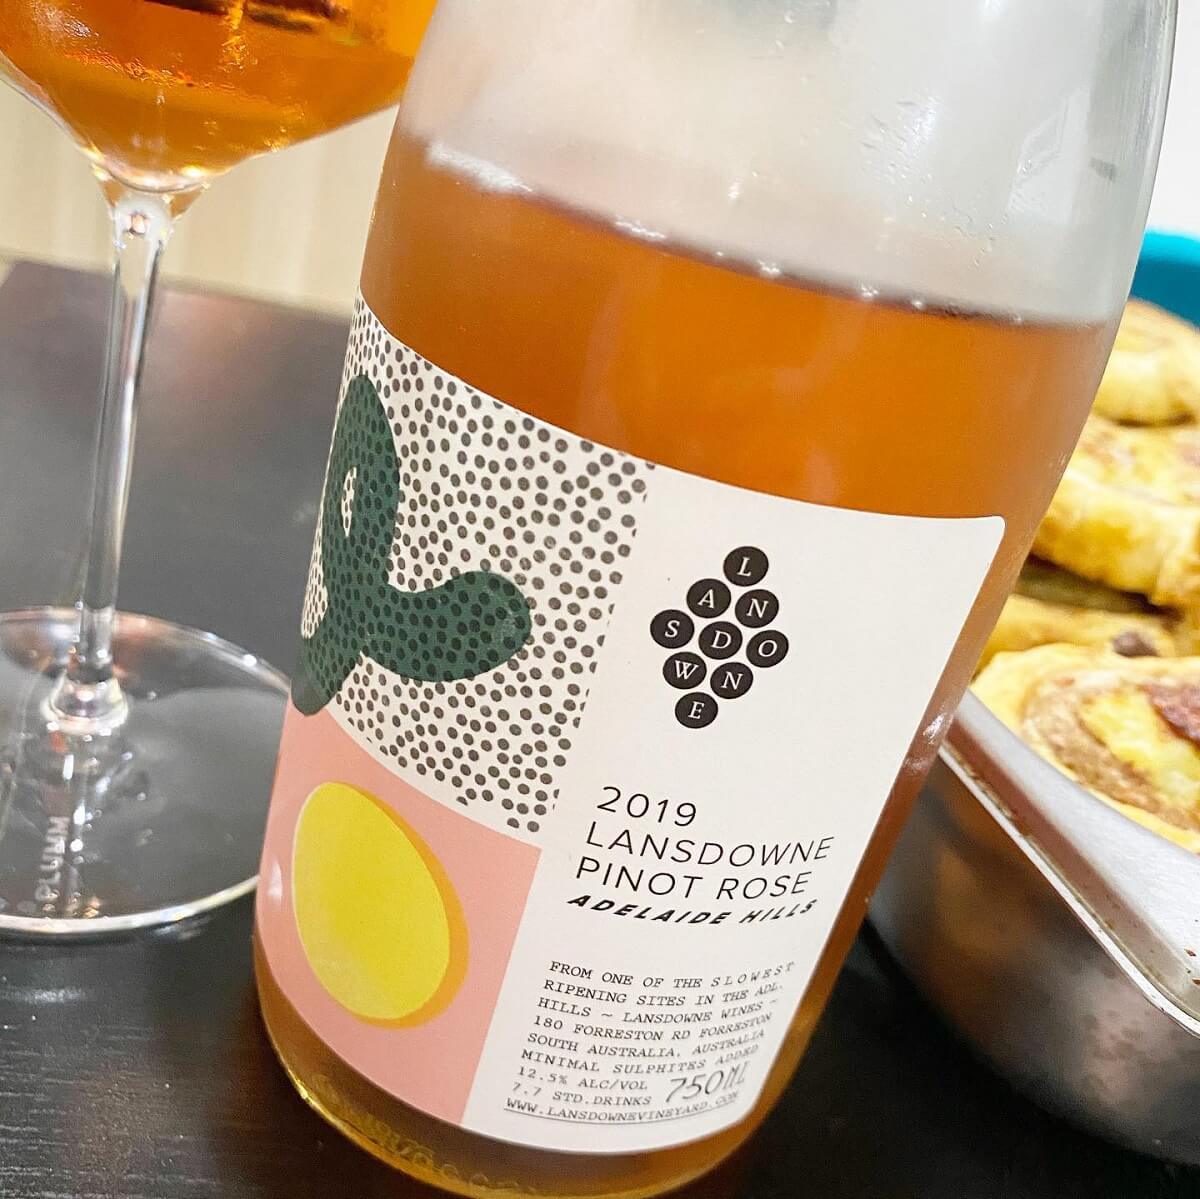 Lansdowne Wine 2019 Pinot Rosé